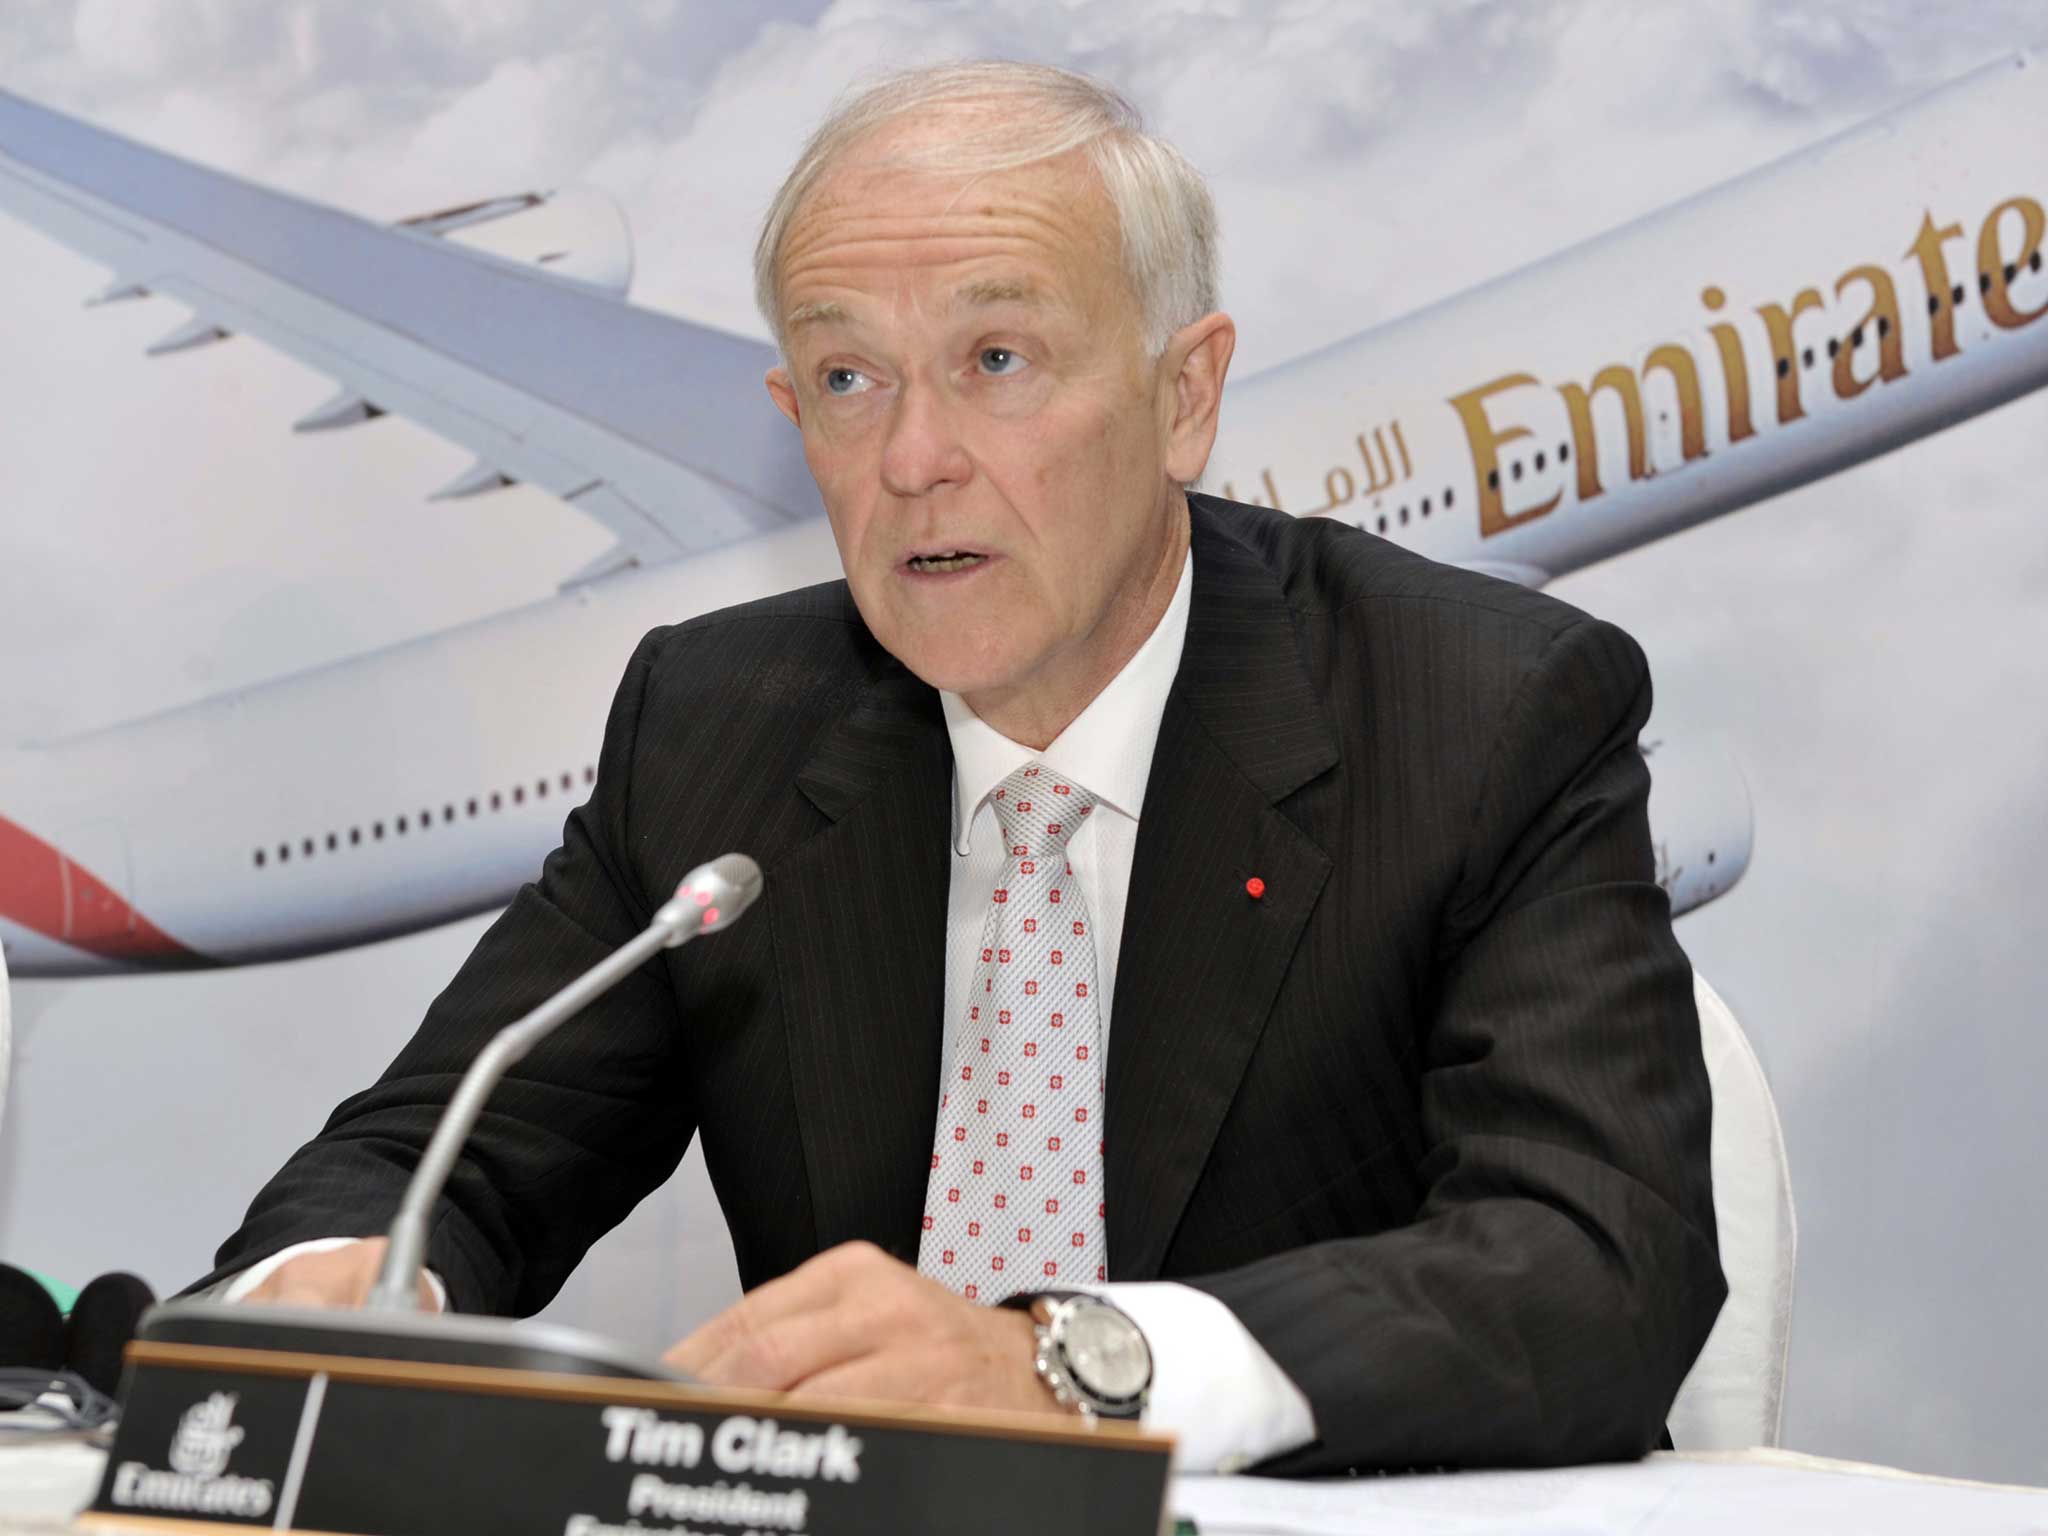 Emirates Airlines boss Tim Clark